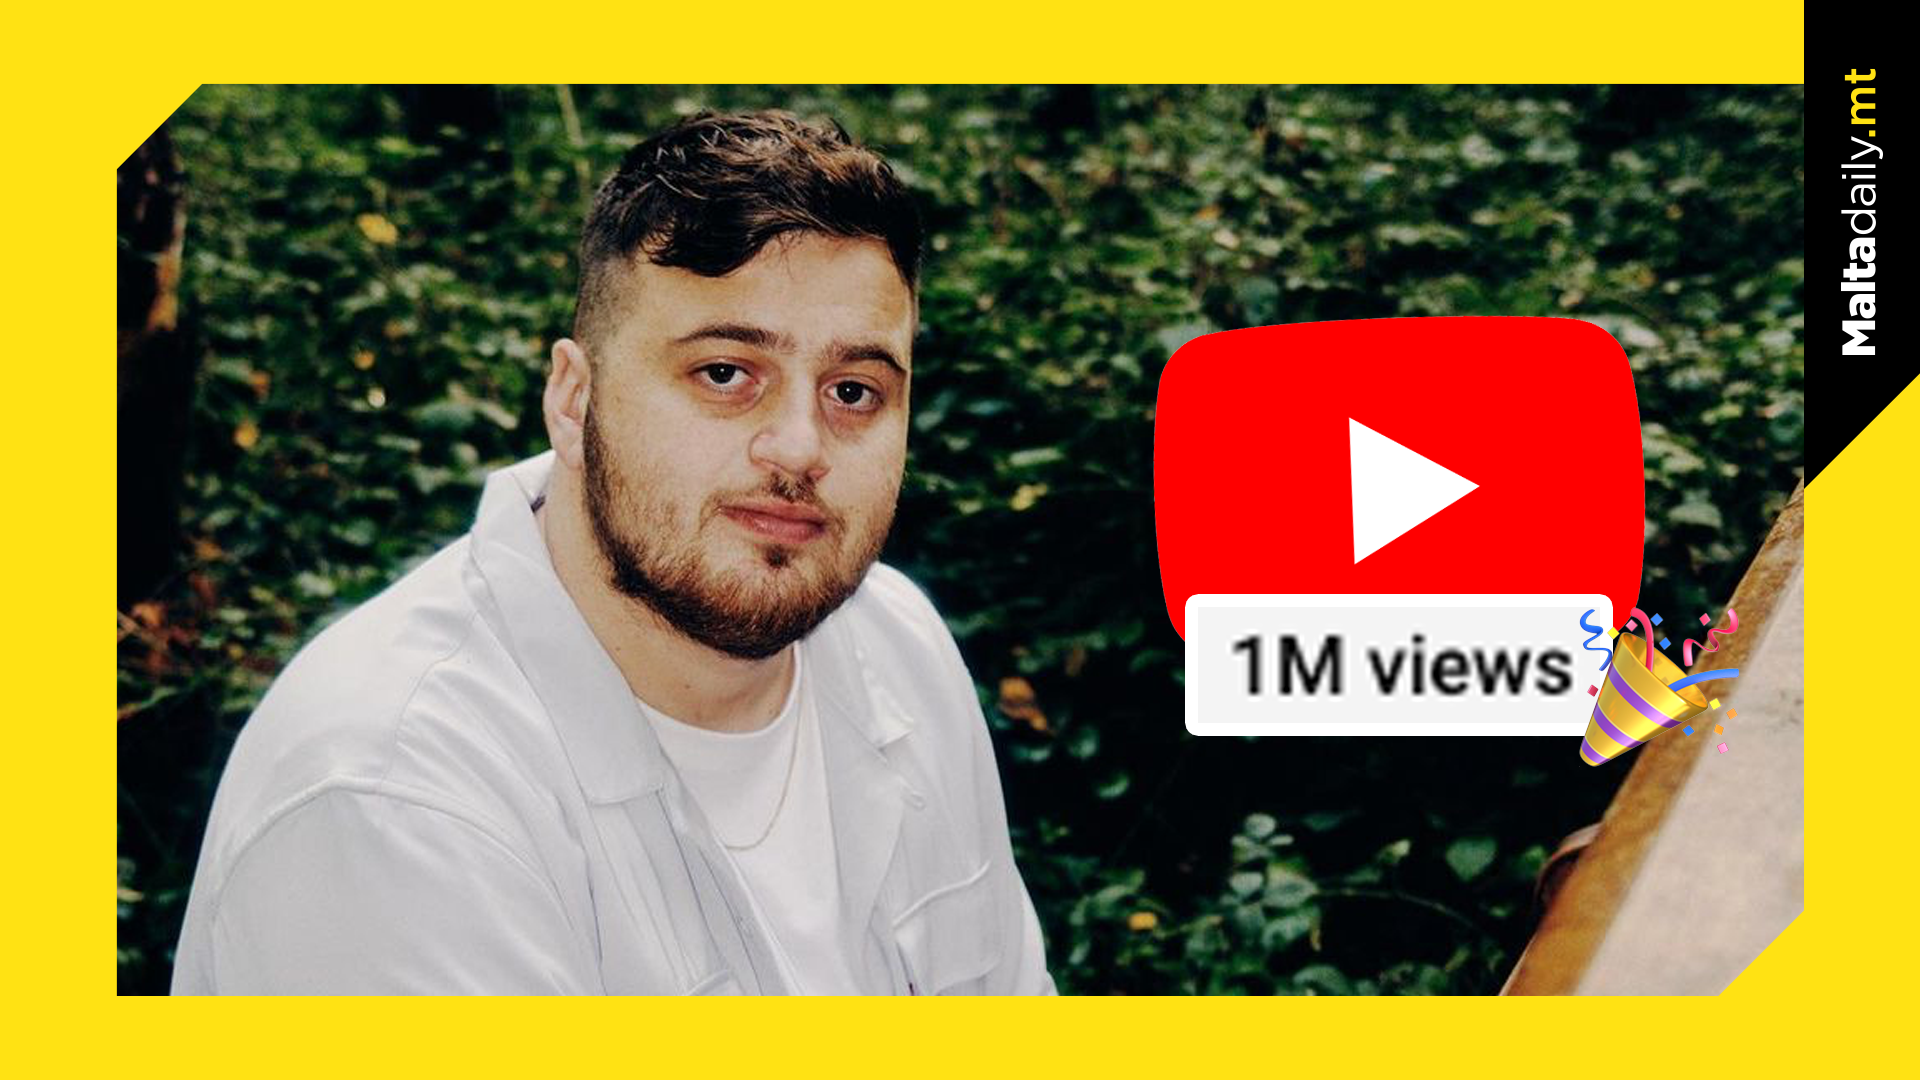 Shaun Farrugia Celebrates His First Million Views on YouTube